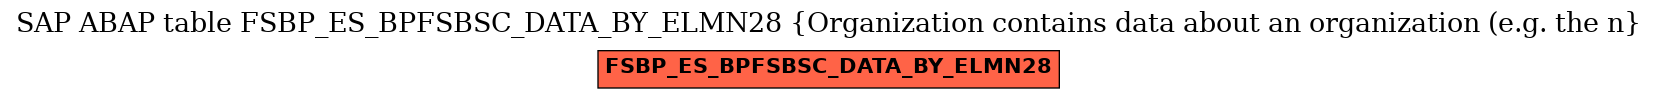 E-R Diagram for table FSBP_ES_BPFSBSC_DATA_BY_ELMN28 (Organization contains data about an organization (e.g. the n)